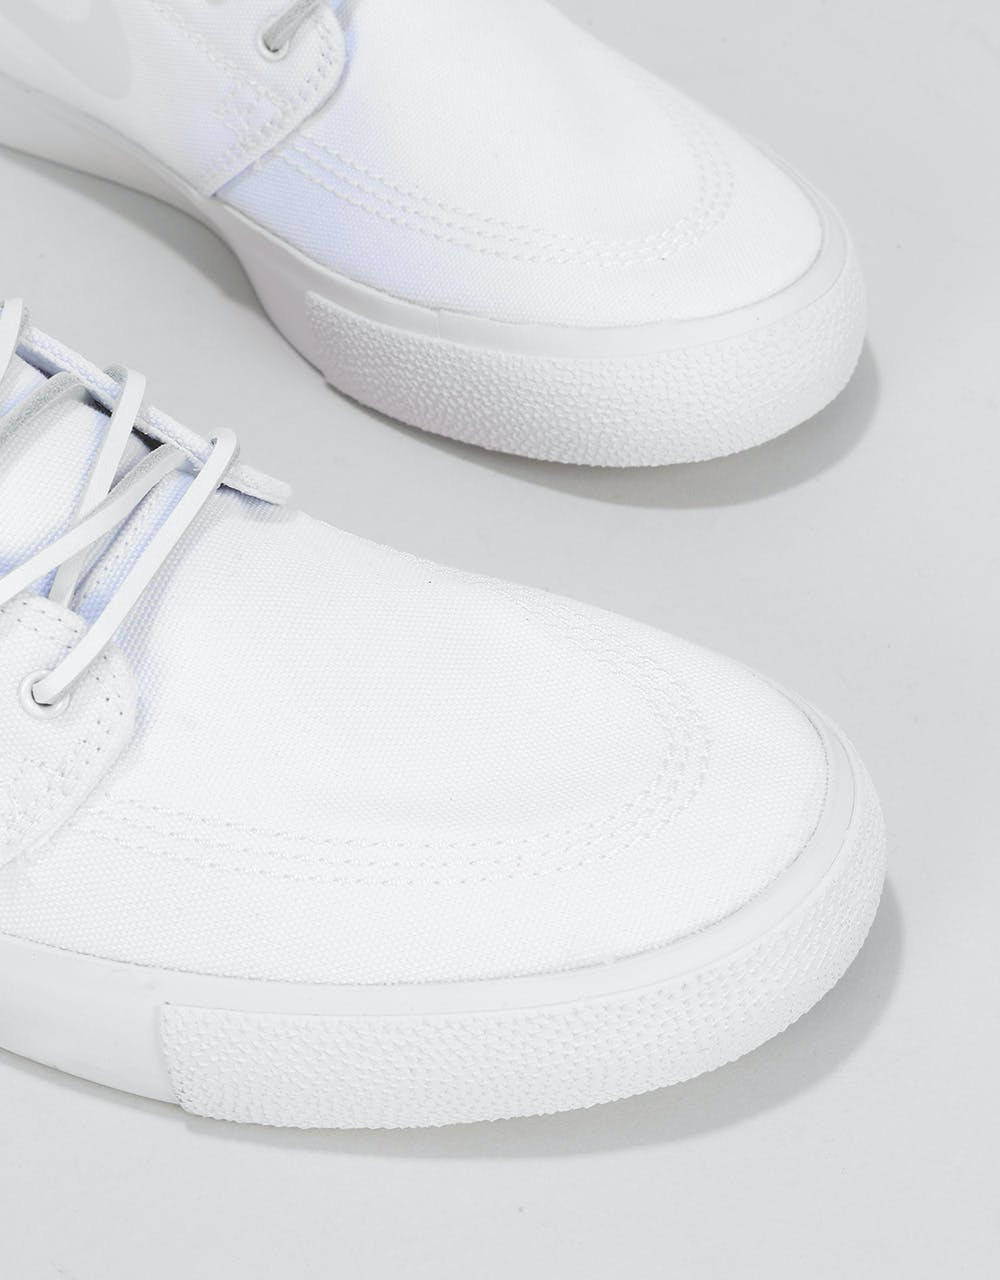 Nike SB Zoom Janoski RM QS Skate Shoes - White/Clear-White/Tour Yellow